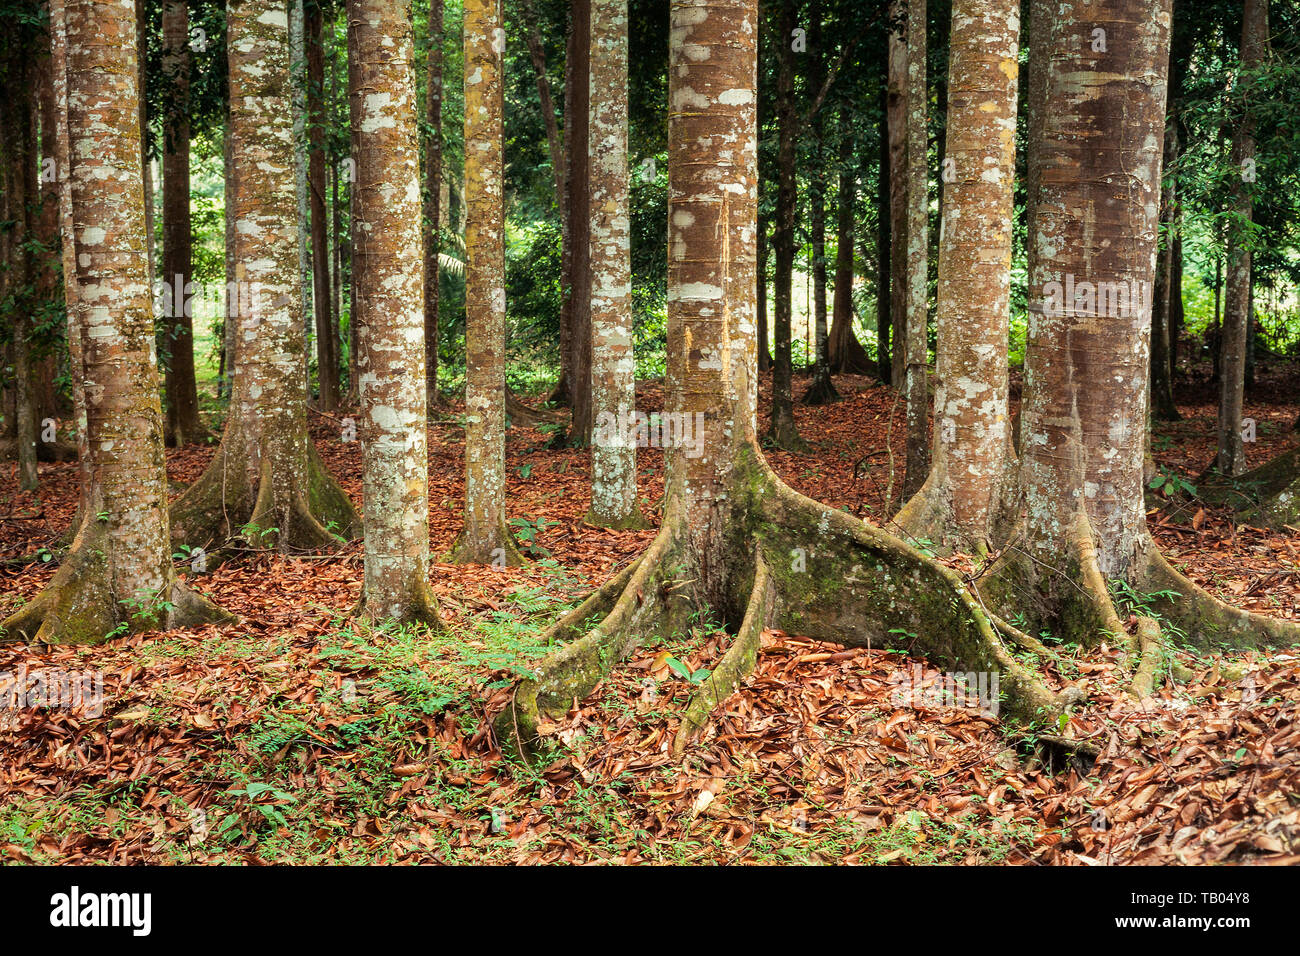 Tropischer Wald Bäume, kleine butress Baumwurzeln mit Epiphyten & Flechten wachsen auf der Rinde. Stockfoto